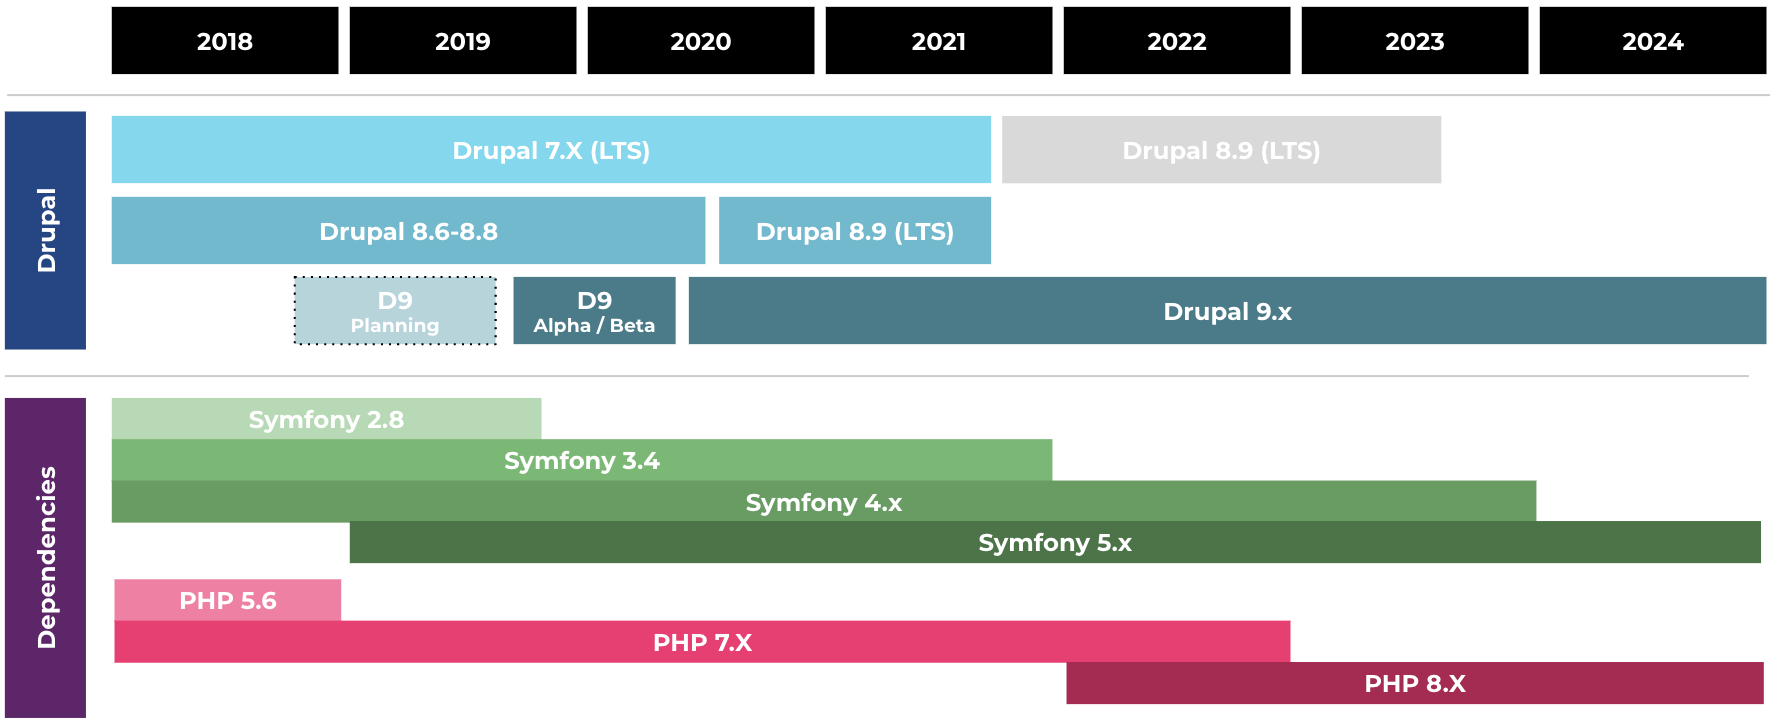 Image of Drupal 9 upgrade timeline compared to Symfony timeline